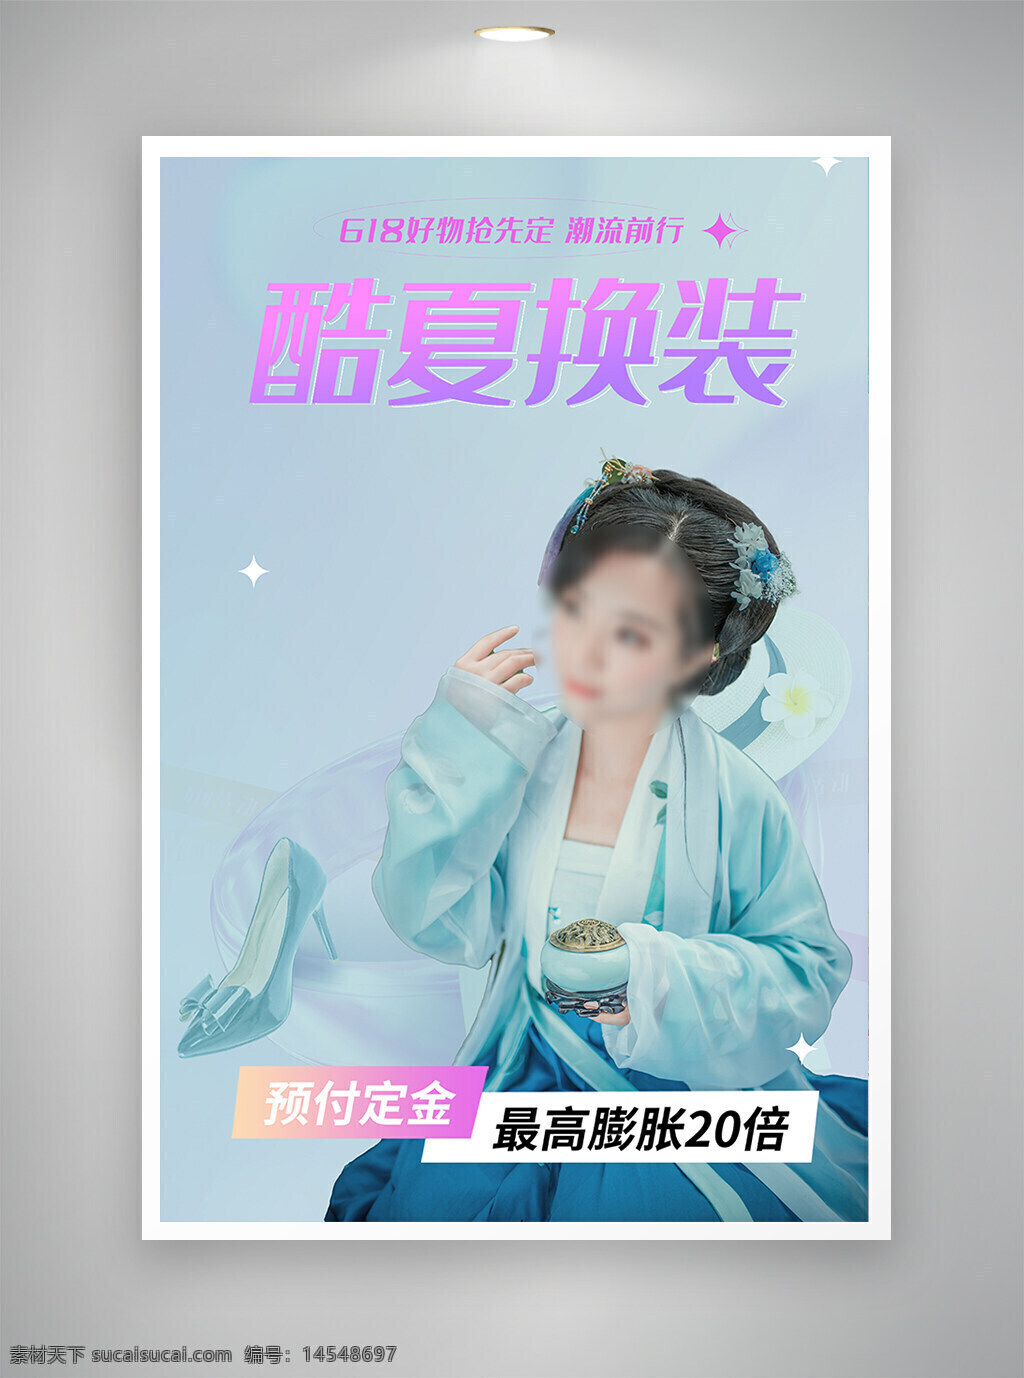 中国风海报 促销海报 节日海报 古风海报 夏季换装